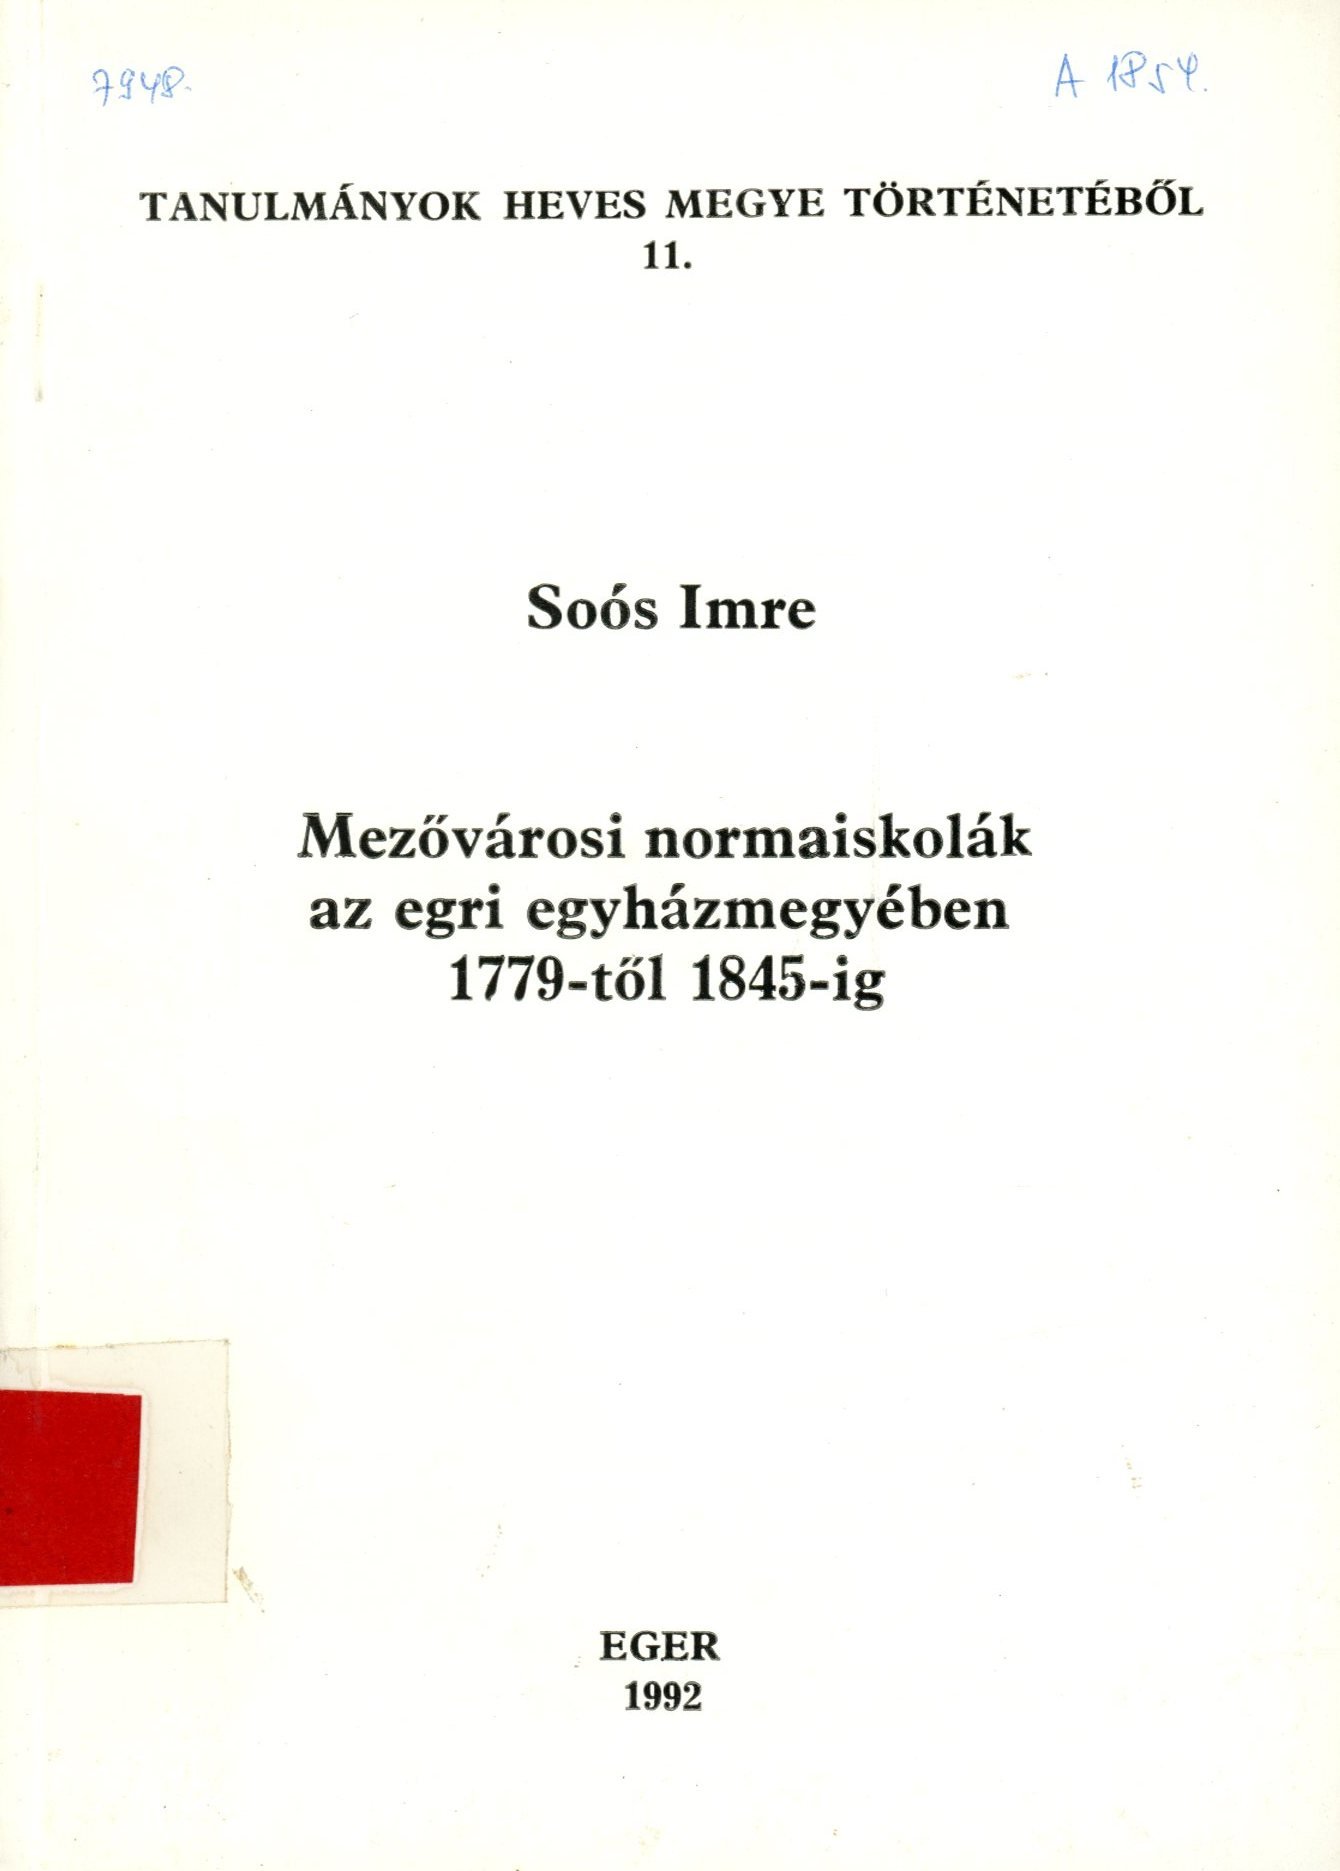 Soós Imre (Erkel Ferenc Múzeum és Könyvtár, Gyula CC BY-NC-SA)